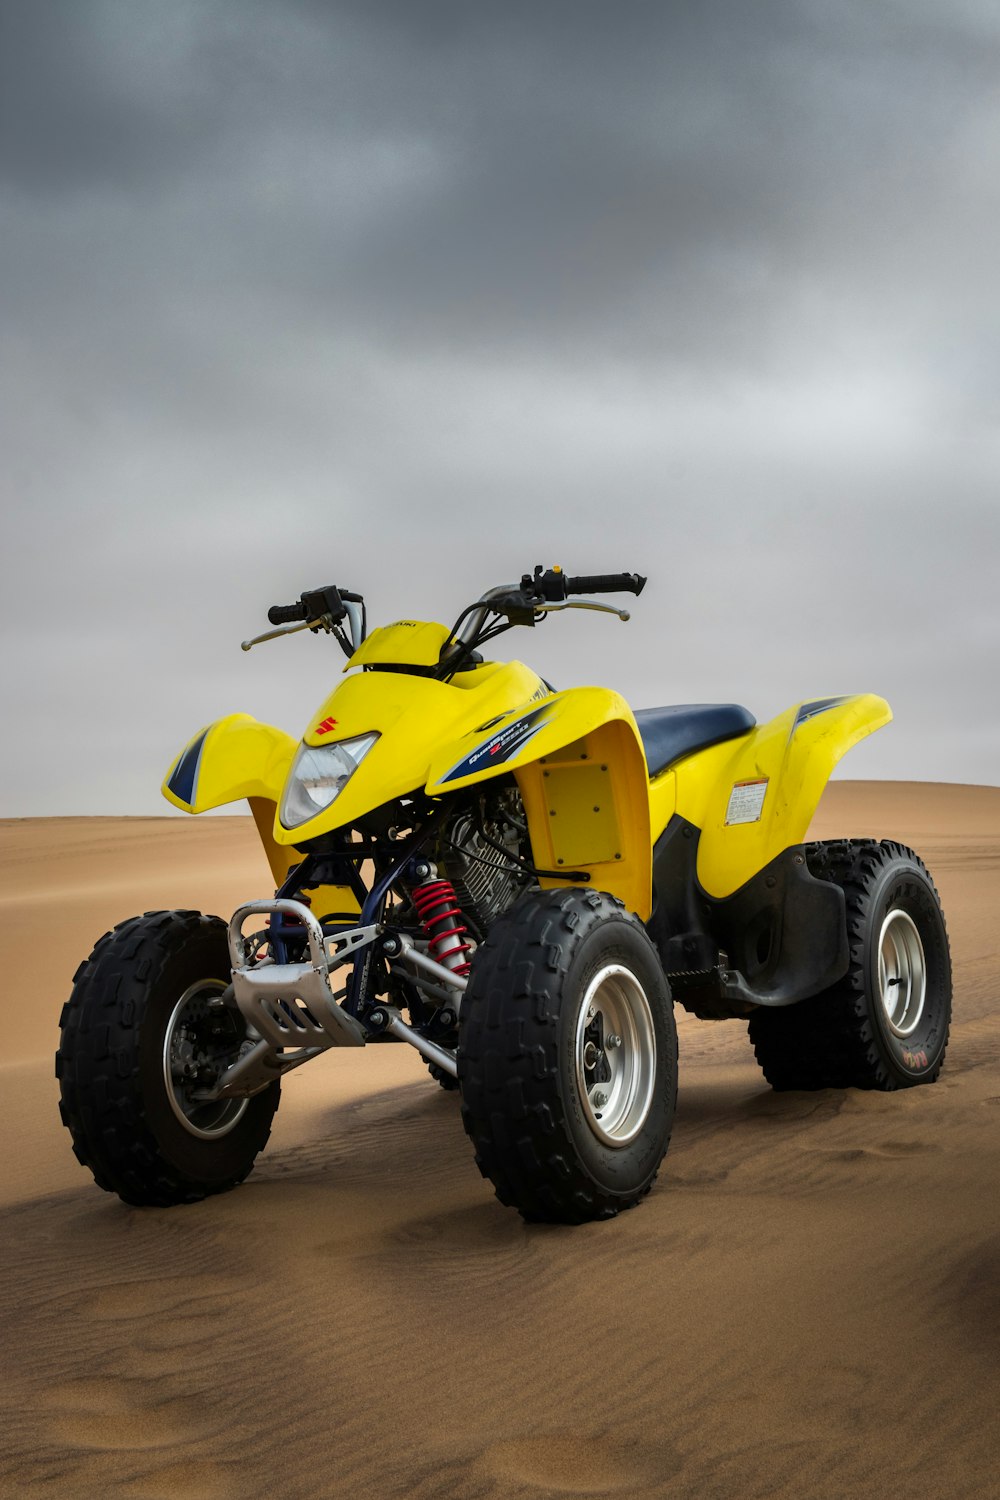 yellow all-terrain vehicle on desert